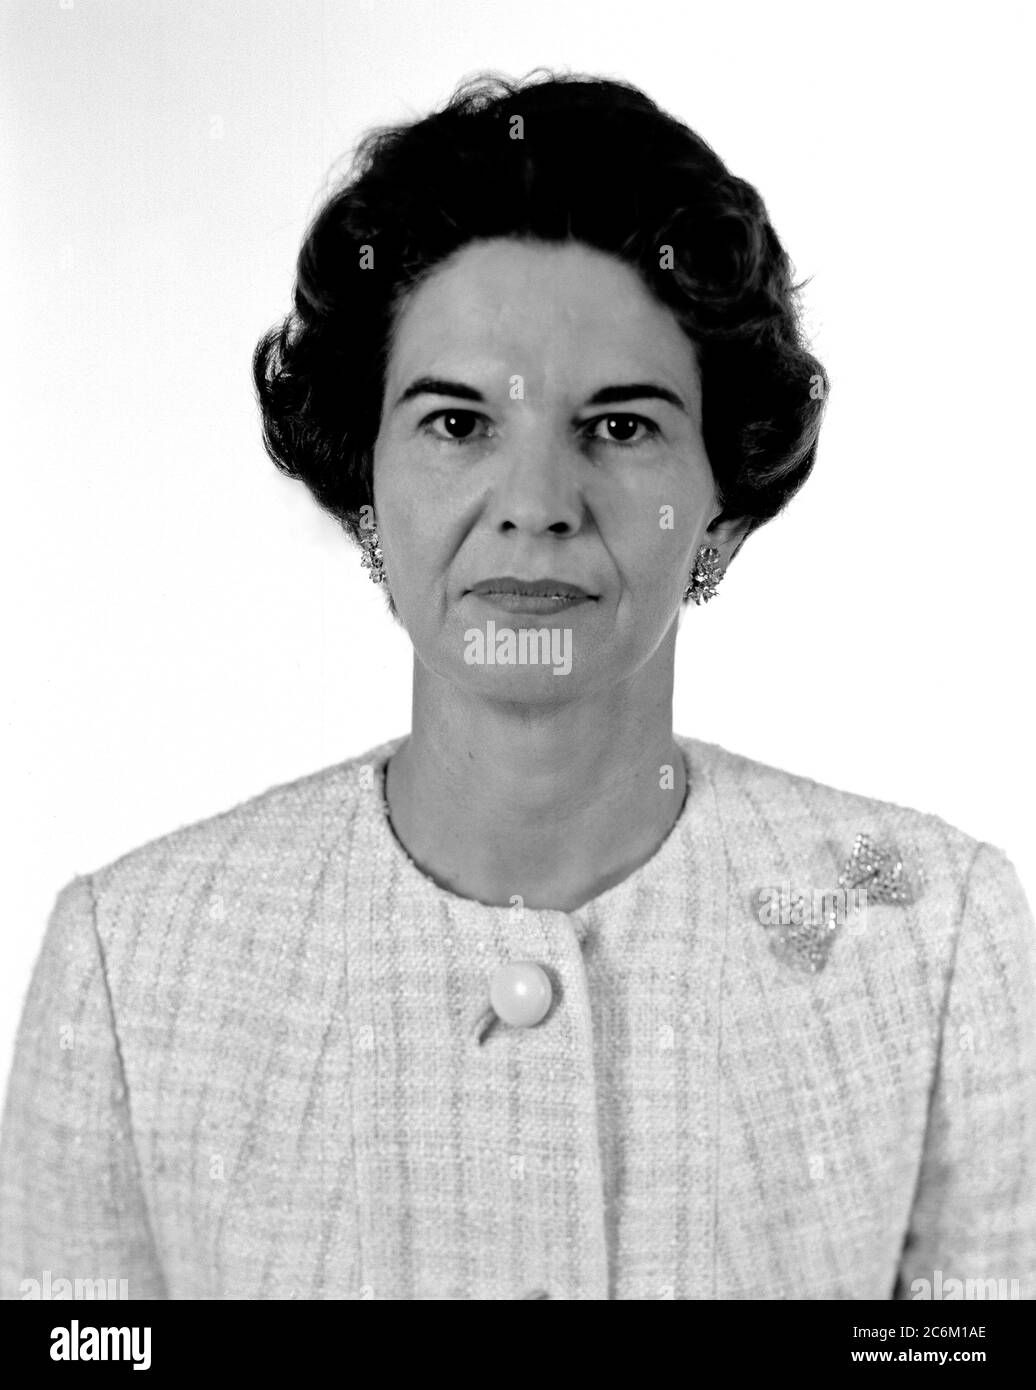 1964, USA: Die amerikanische Elektroingenieurin Frau KITTY Wingfield O'BRIEN JOYNER (1916 - 1993) der NASA, Experte für Elektronik, am LANGLEY FORSCHUNGSZENTRUM. Erinnert wie die erste Frau Ingenieur am Memorial Langley Aeronautical Laboratory . - NASA - N.A.S. - die Nationale Luft- und Raumfahrtbehörde - foto storiche - foto storica - scienziato - Wissenschaftler - INGEGNERE DONNA - INGEGNERIA ELETTRONICA - DONNE DONNA - AL LAVORO - AERONAUTICA --- Archivio GBB Stockfoto